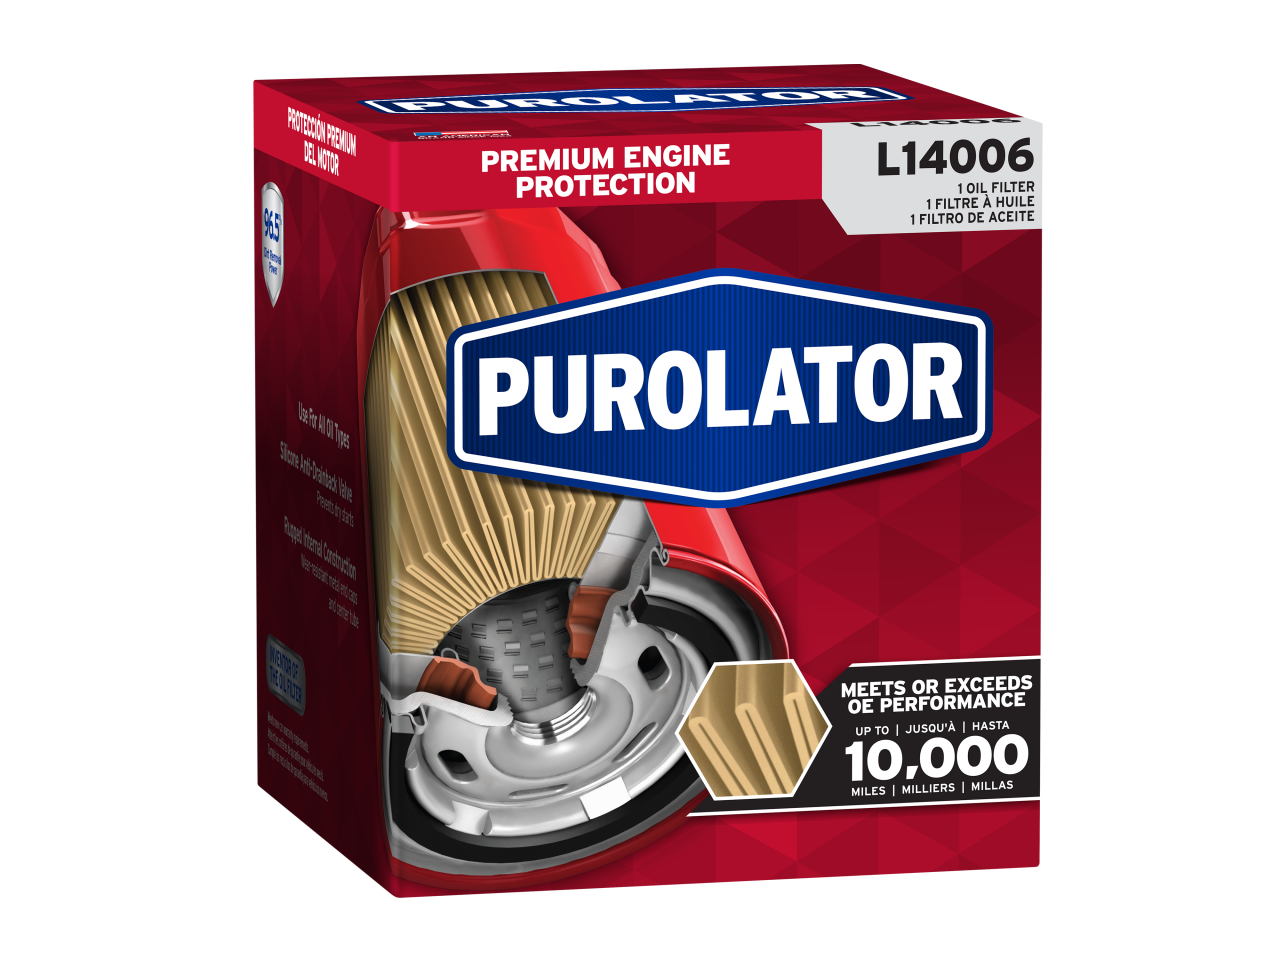 Les filtres à huile Purolator sont conçus pour répondre aux performances d’usine d’origine pour jusqu’à 5 000 miles de protection de moteur de niveau supérieur.